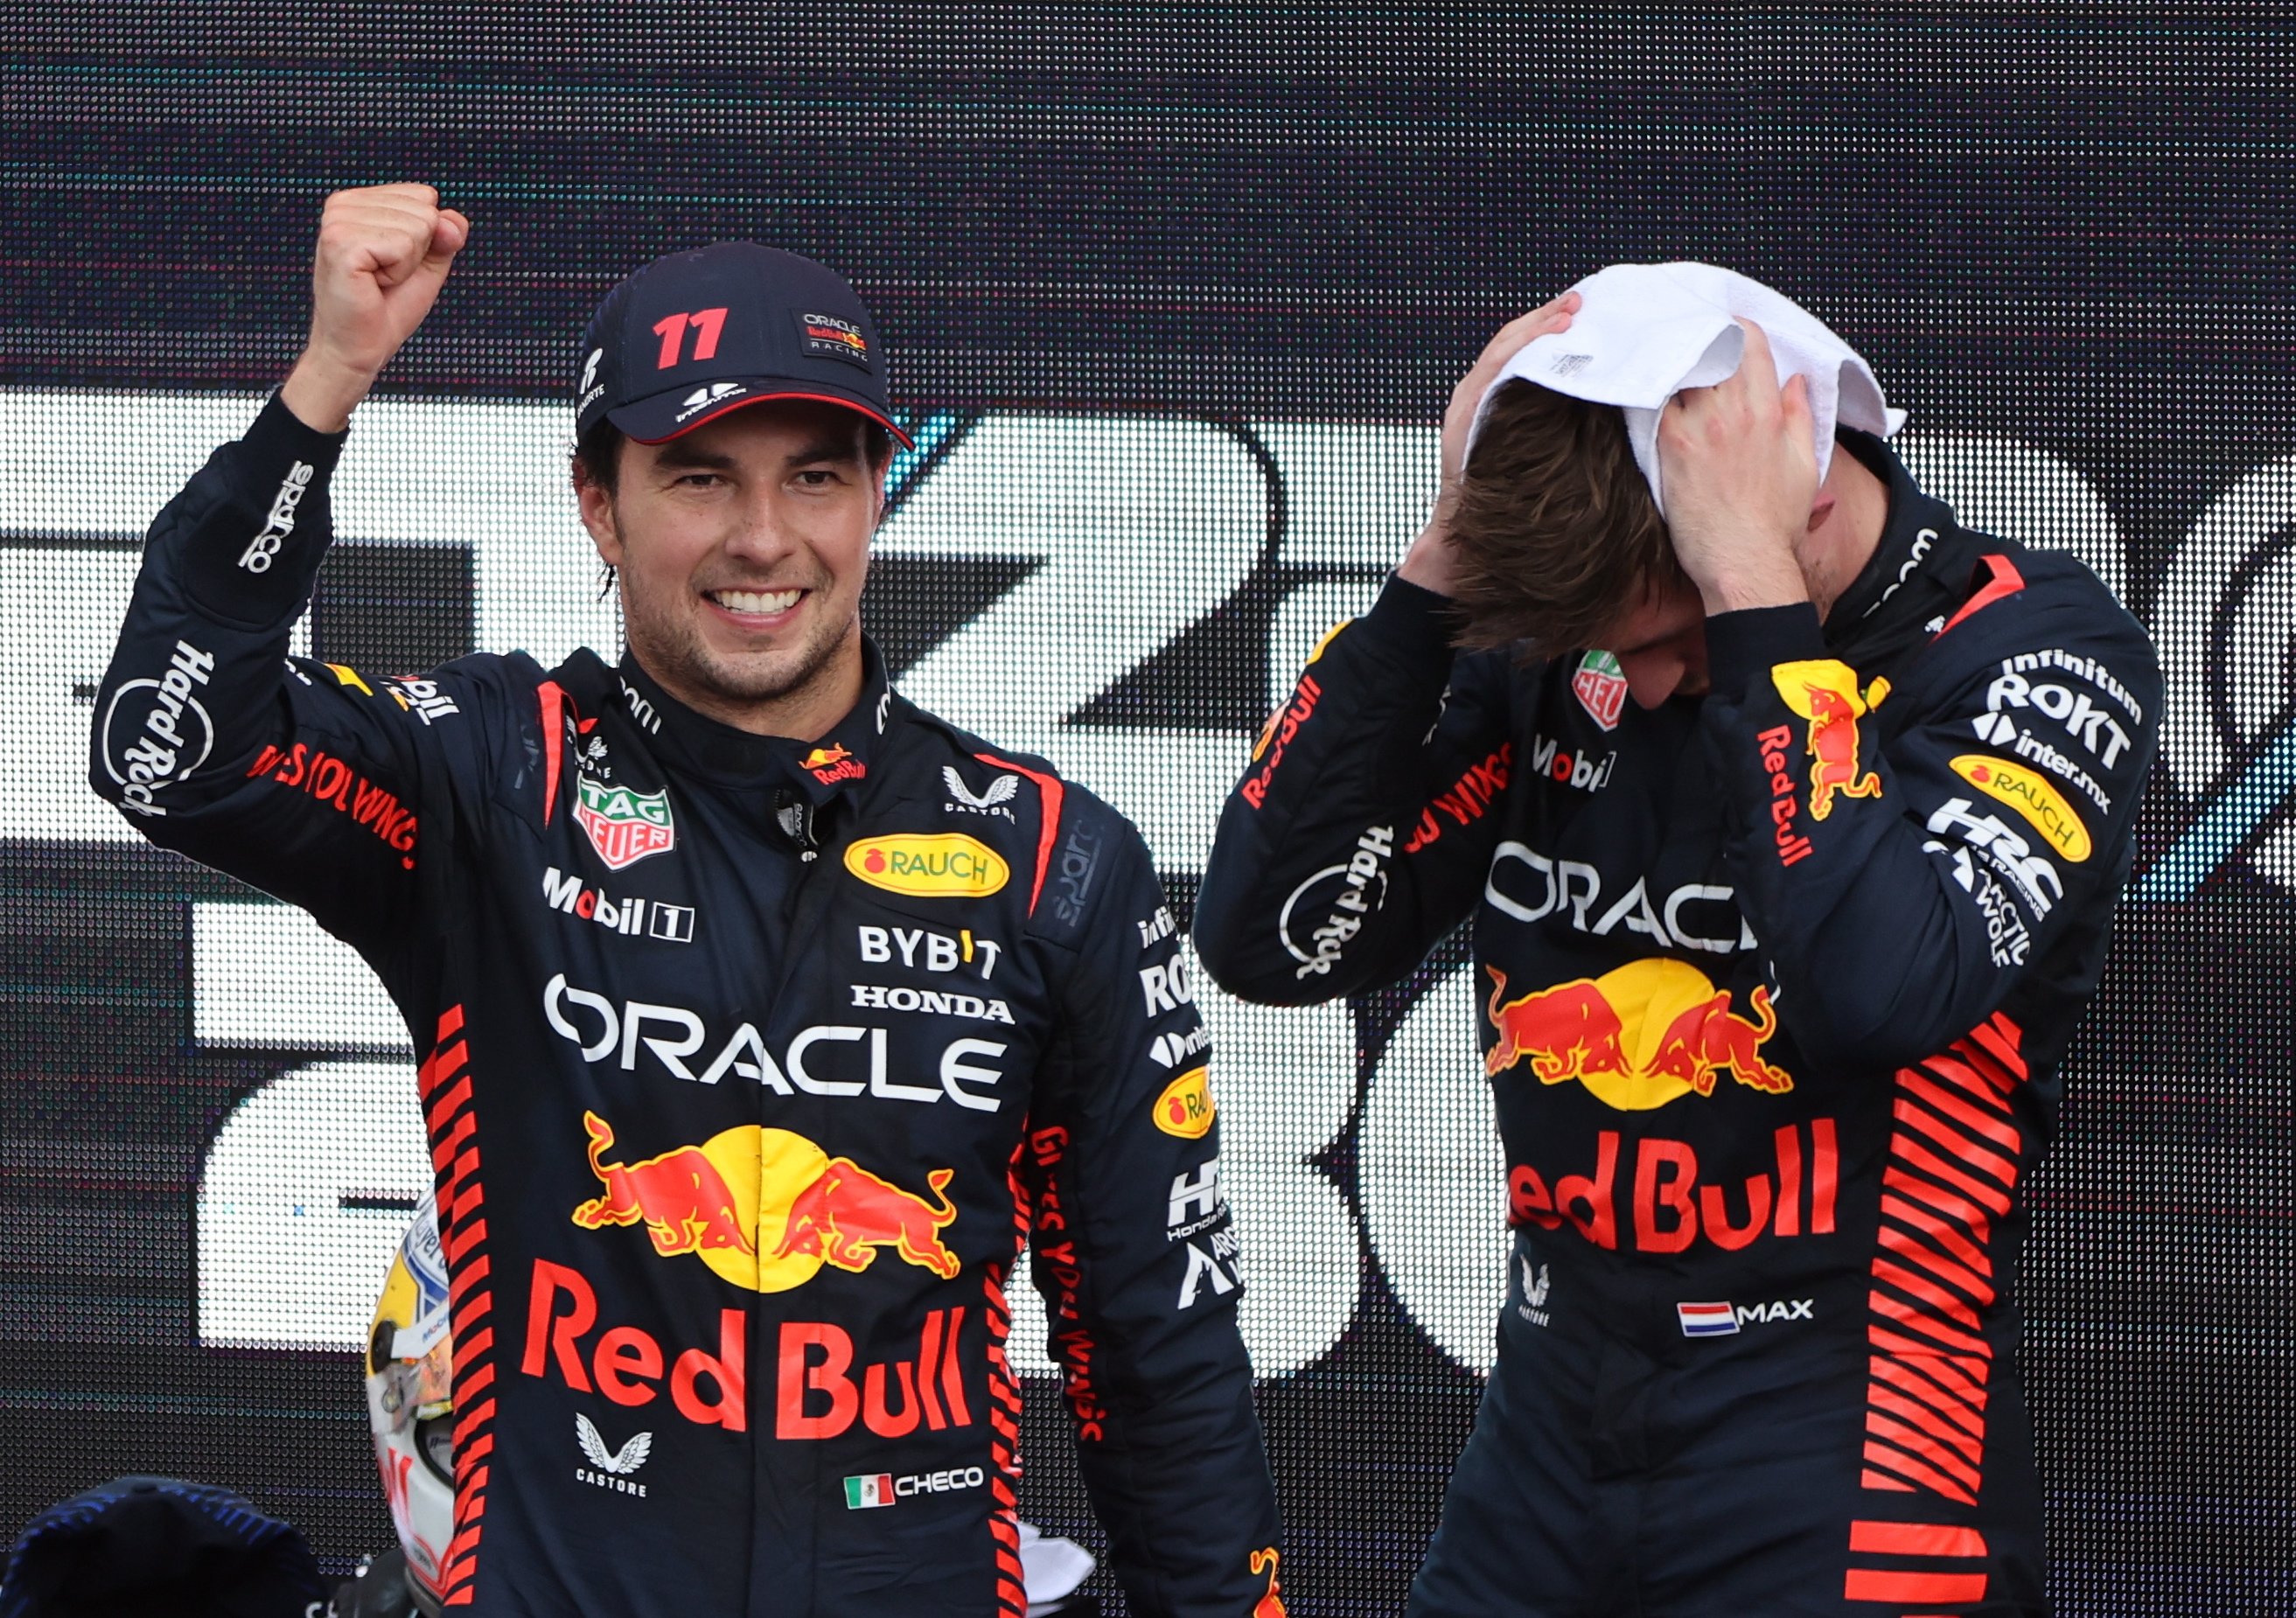 Red Bull tenía planeado dejar a Checo Pérez sin la victoria para beneficiar a Max Verstappen